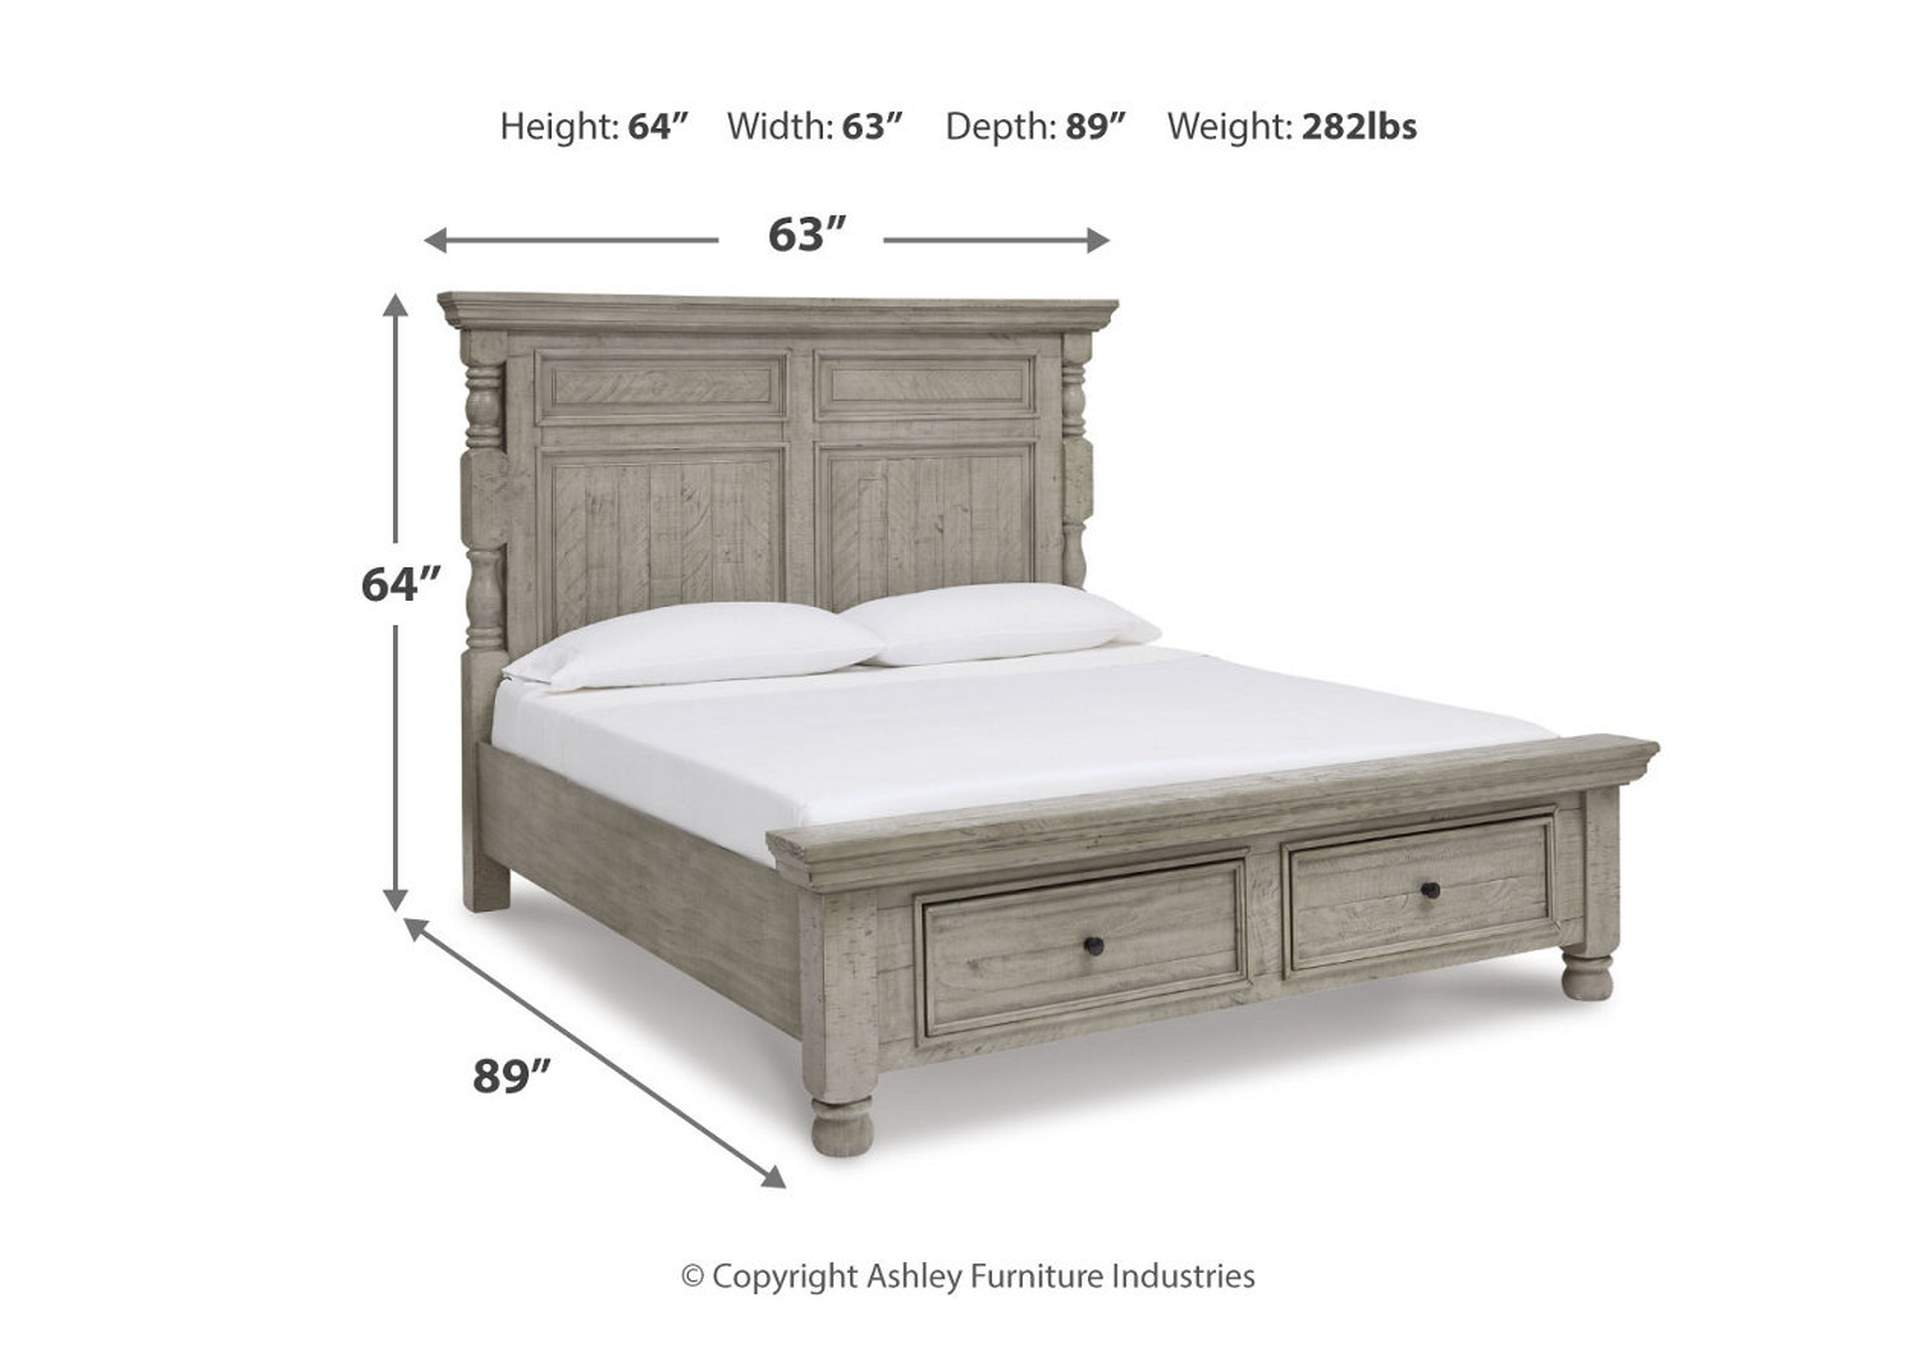 Harrastone Queen Panel Bed with Mirrored Dresser and 2 Nightstands,Millennium